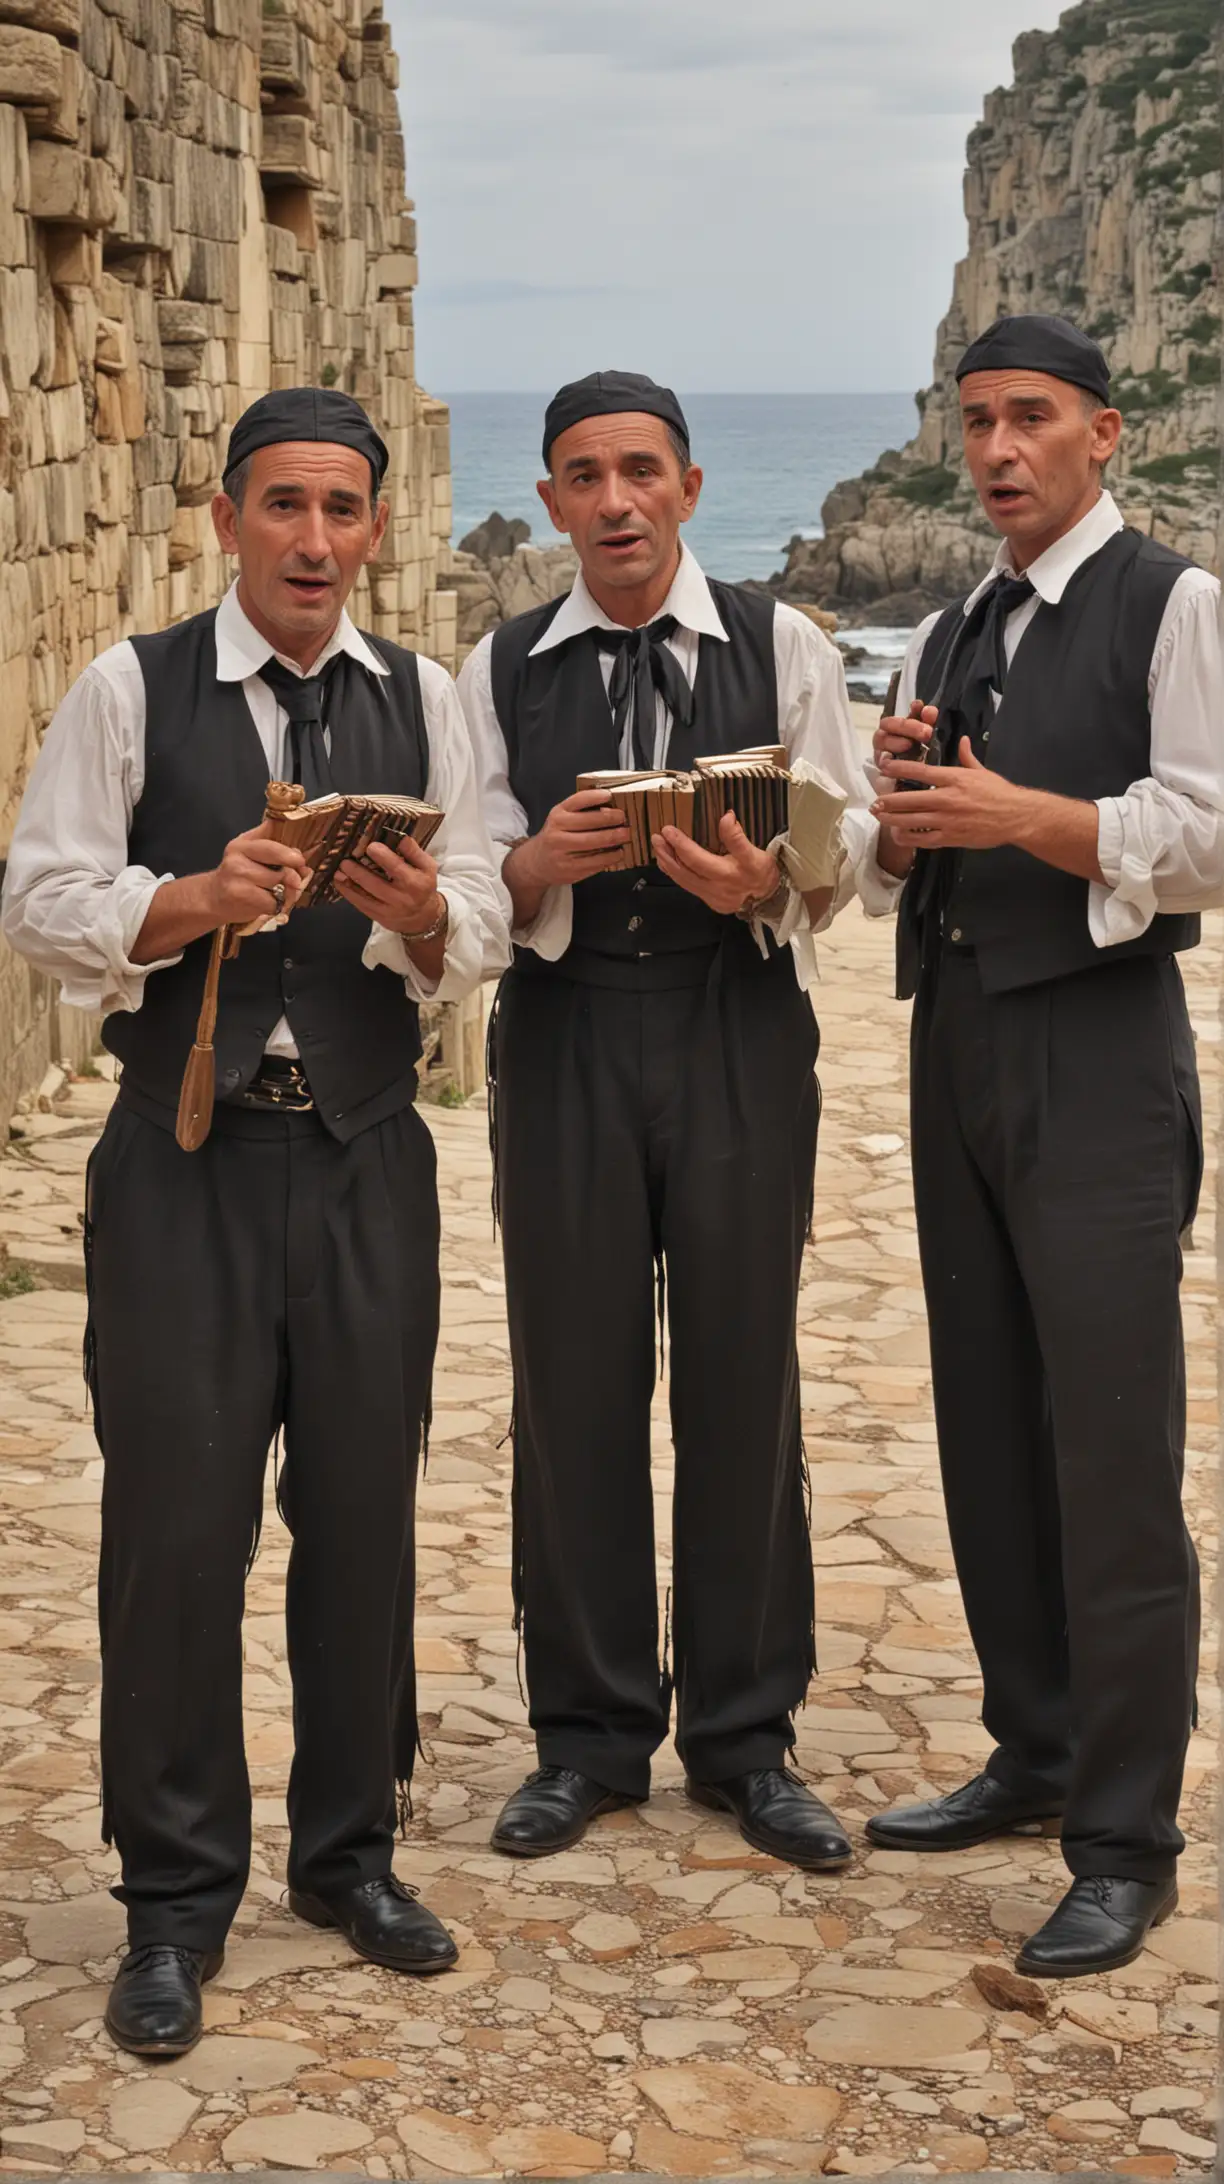 corsican men singers